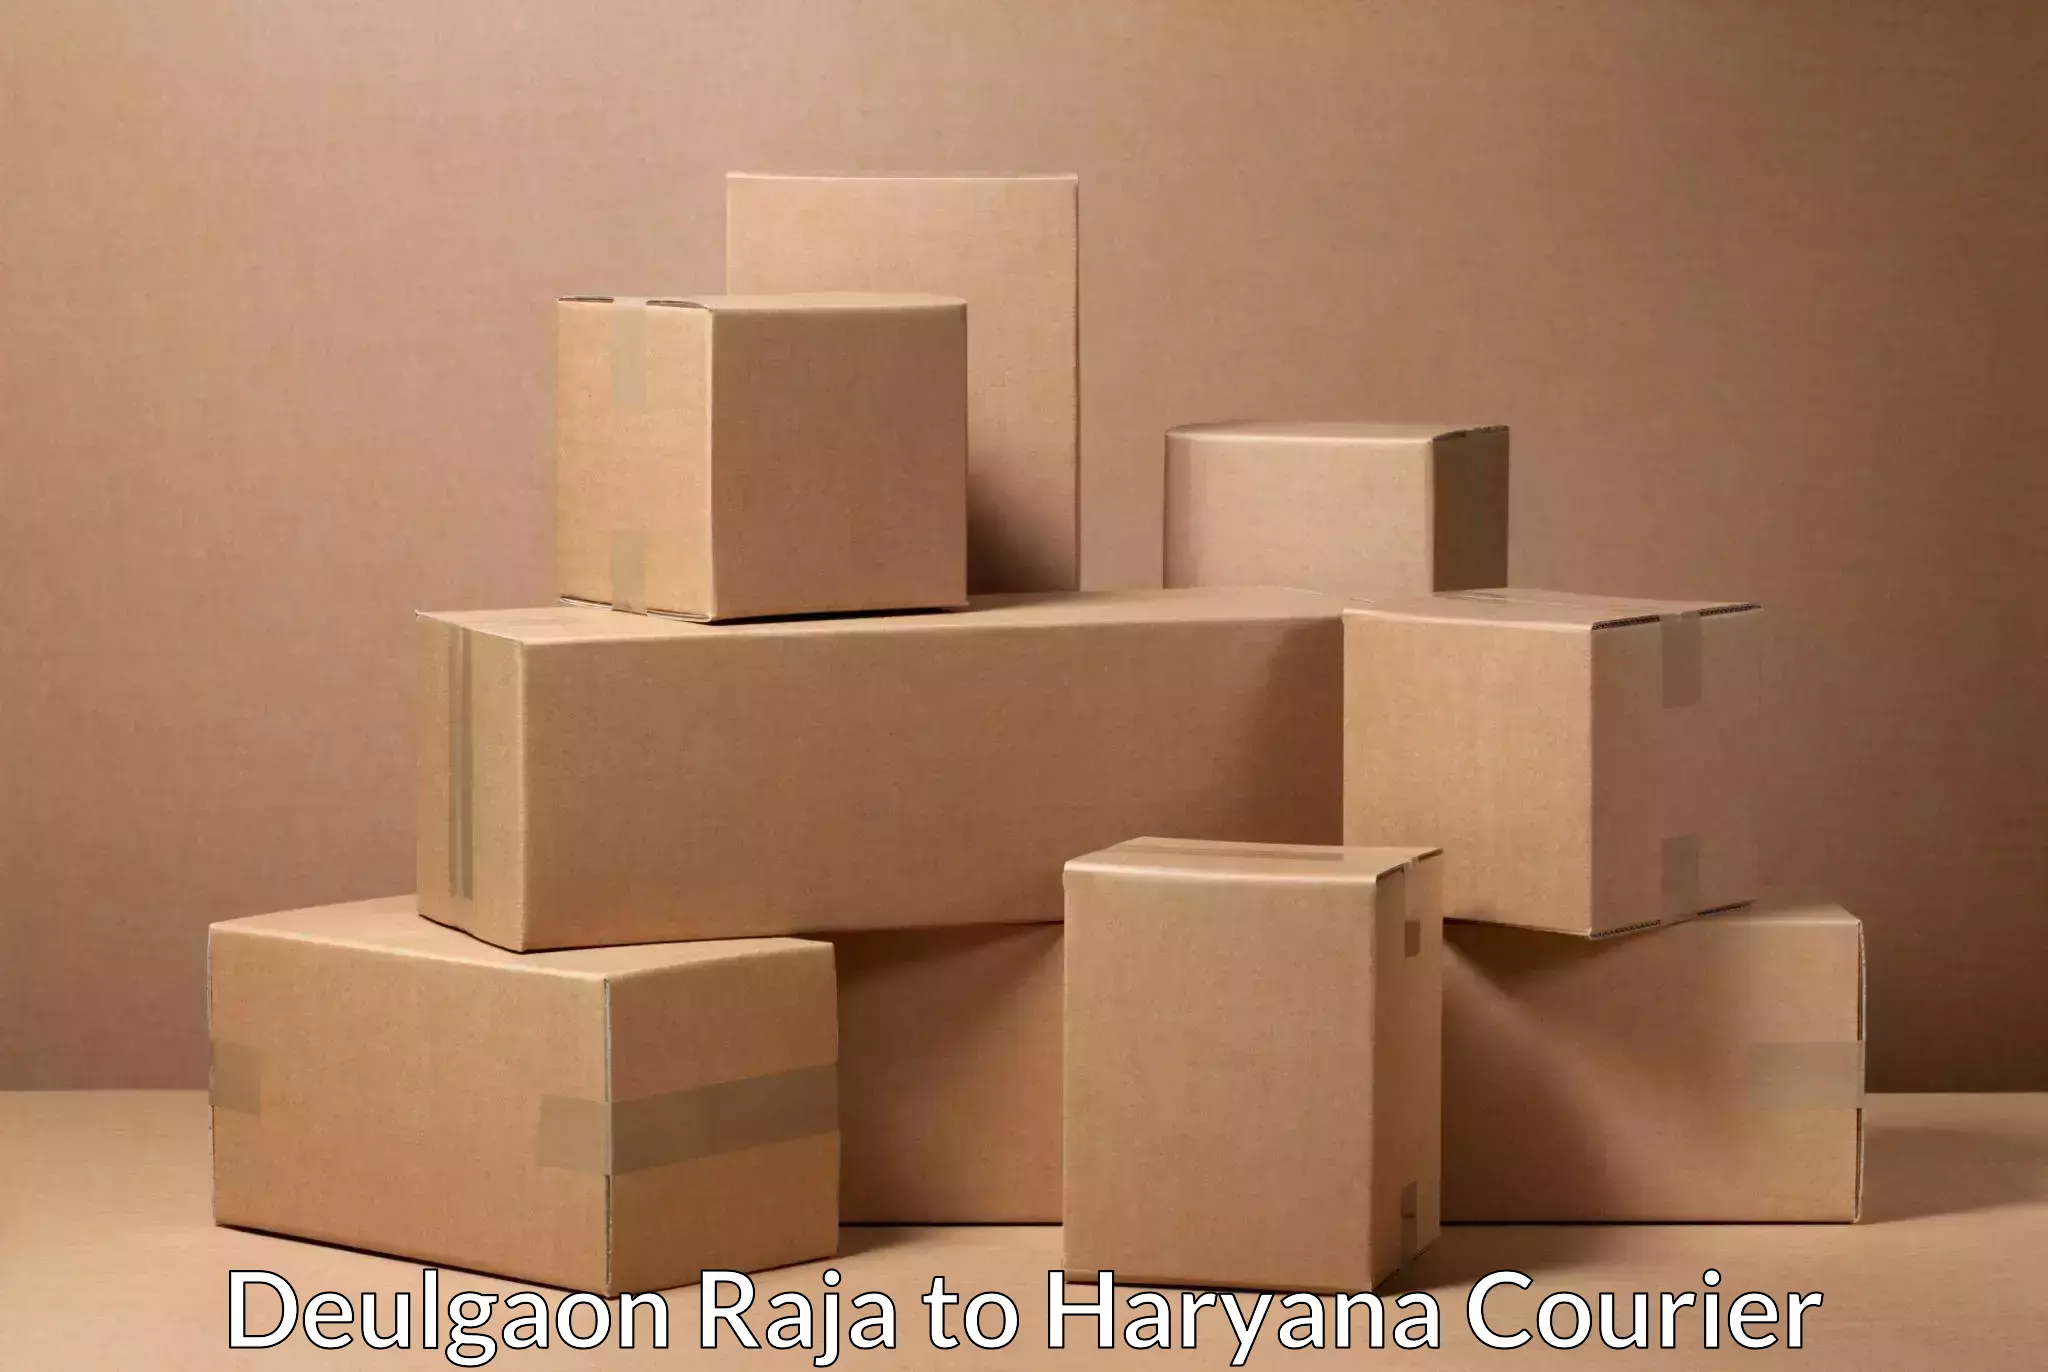 Package delivery network Deulgaon Raja to Haryana